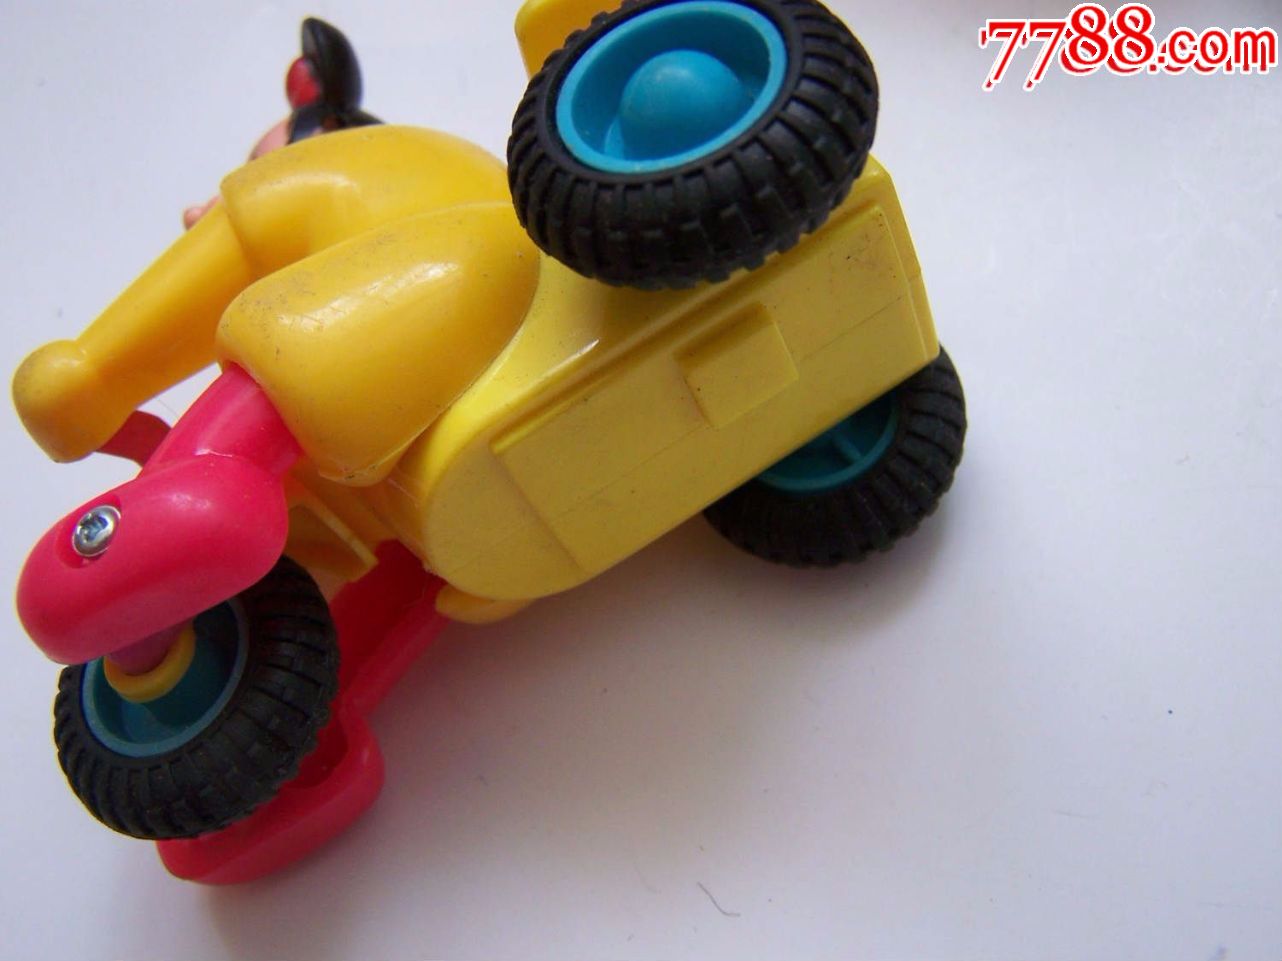 回力(可爱米老鼠)90年代,玩具2台合售,上劲之后